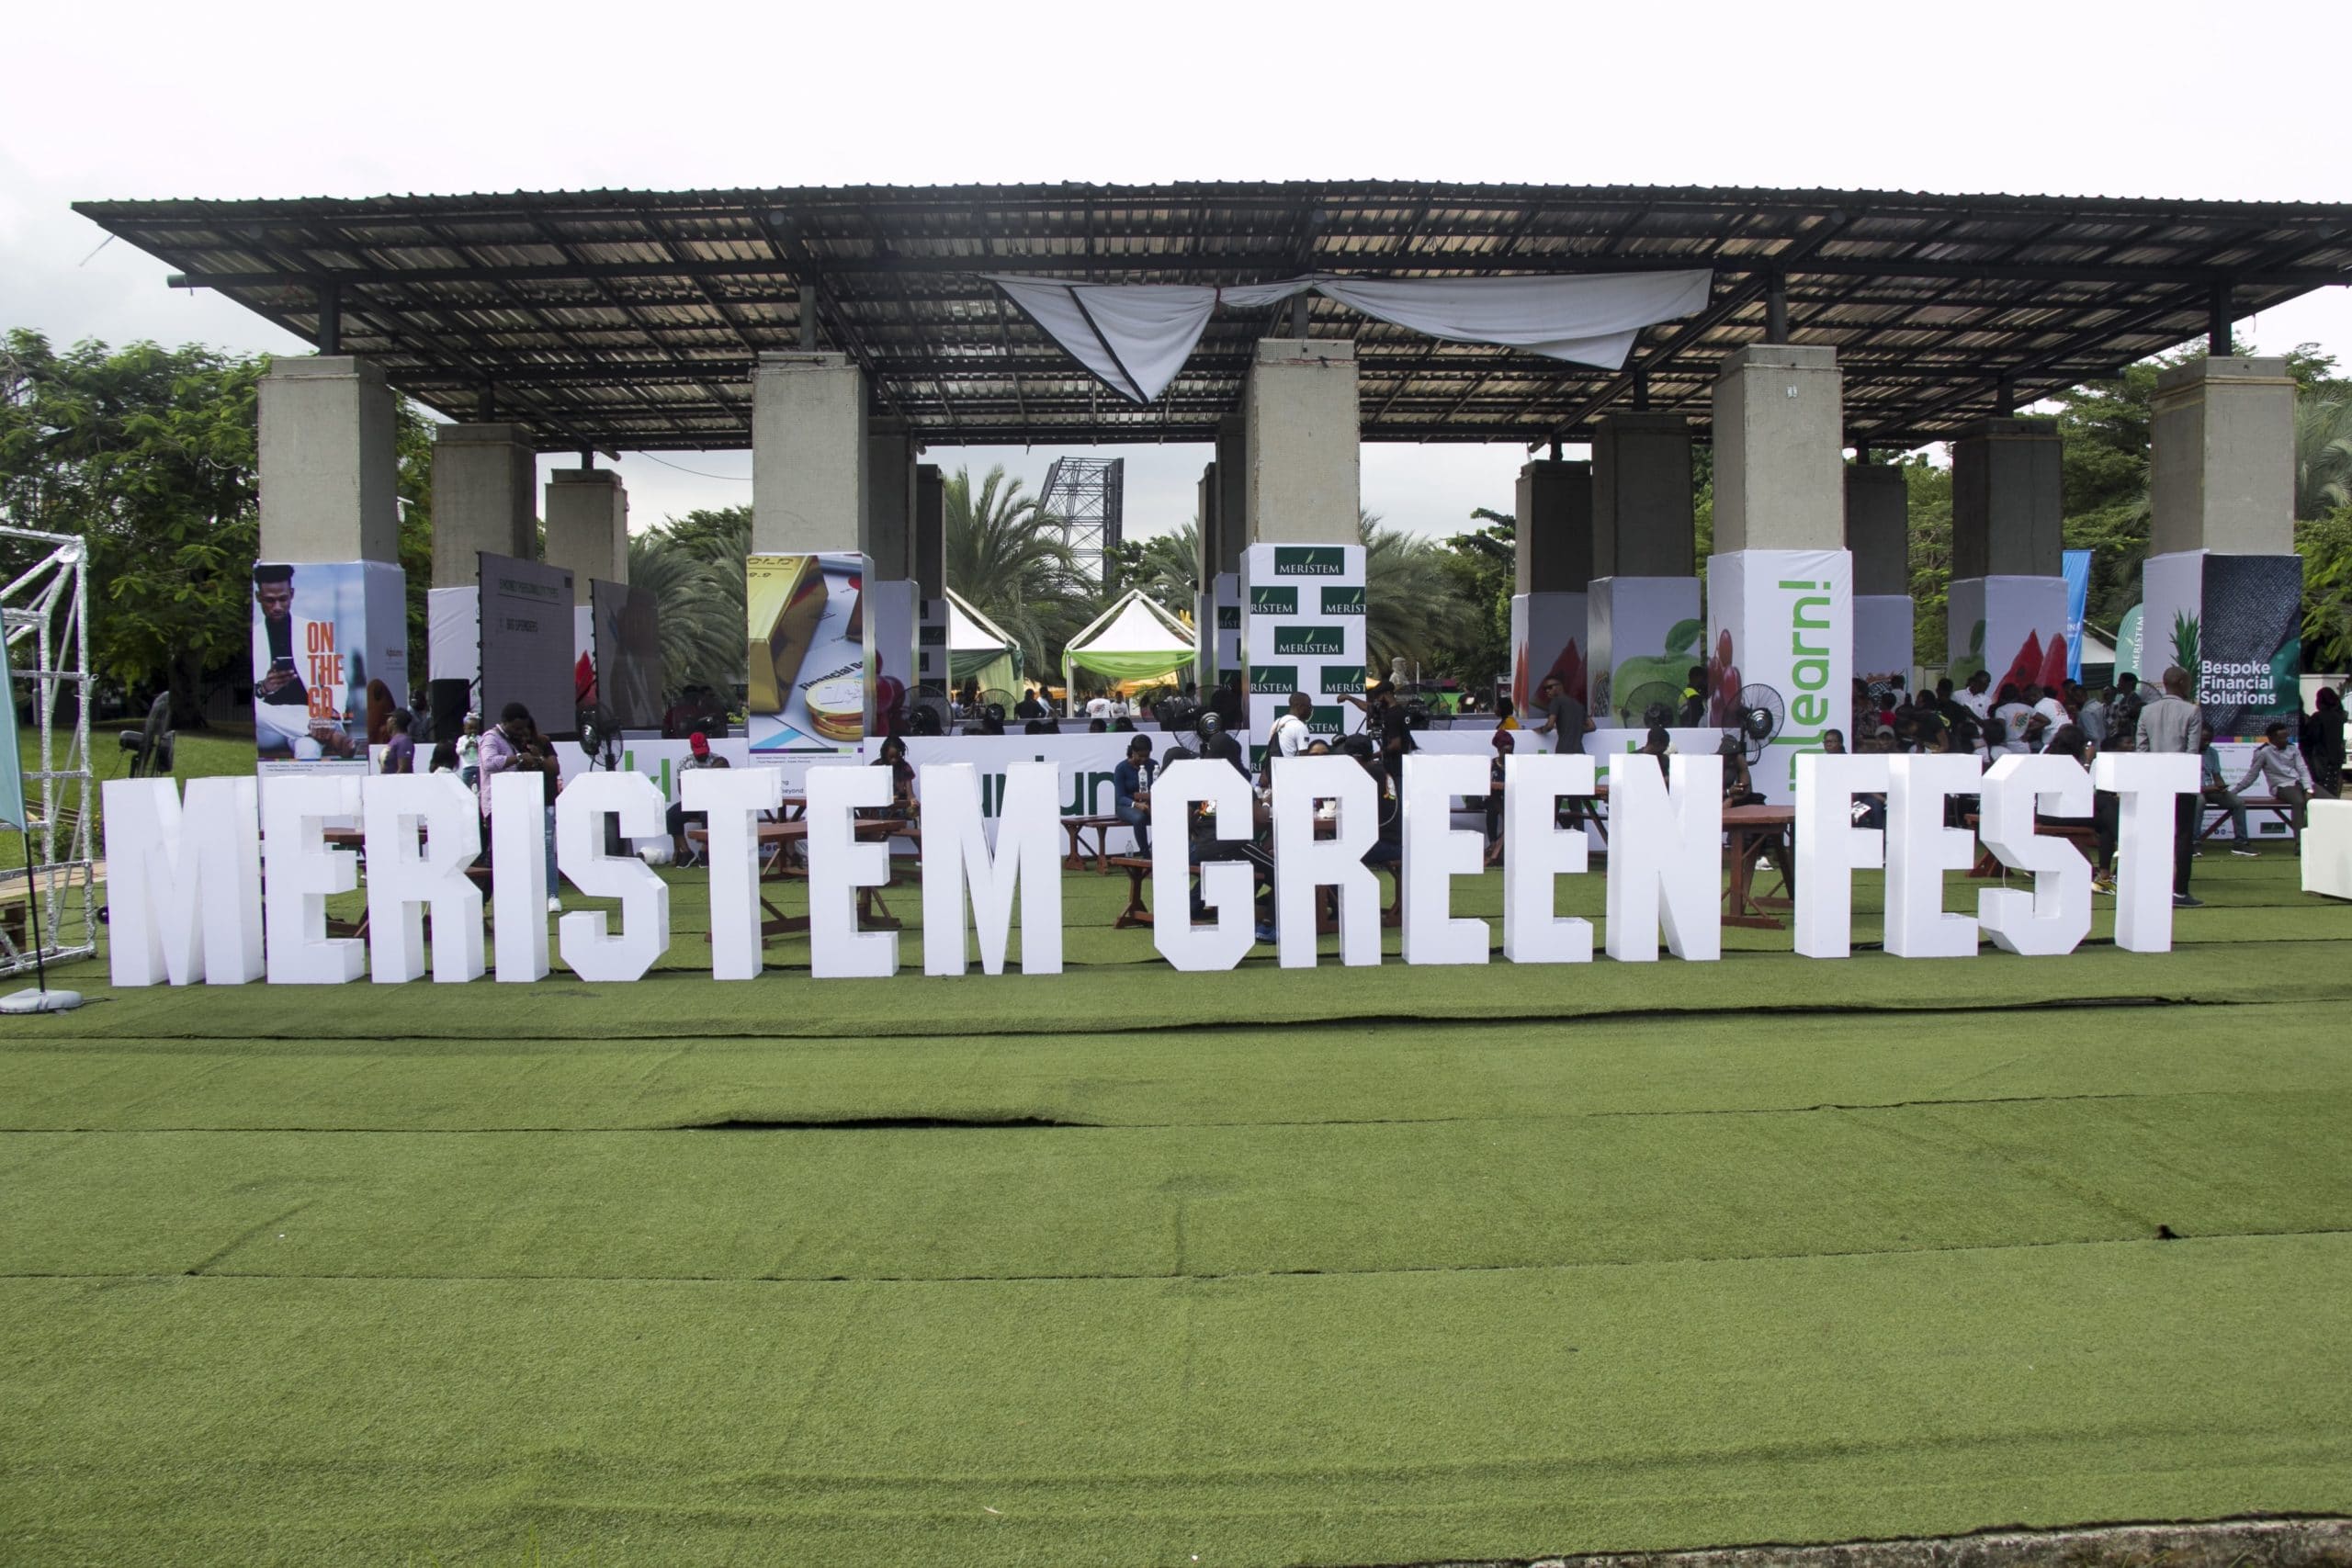 Meristem Green Fest